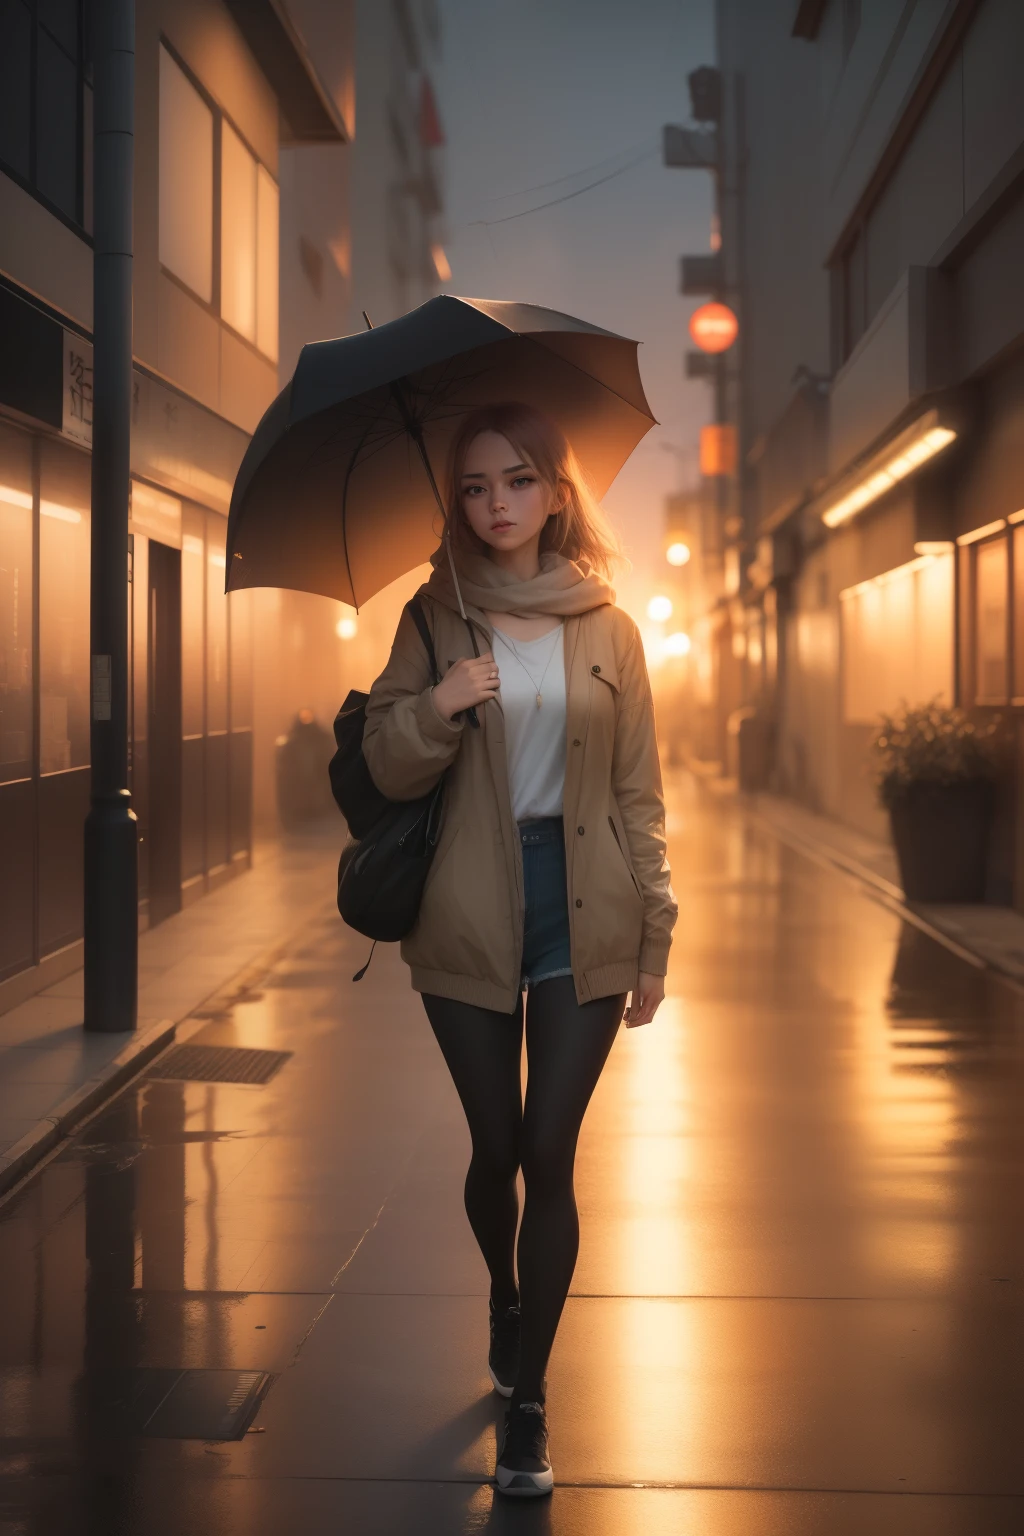 一位年轻女子撑着伞步行回家, 二十多岁的女人, 小雨, 东京动漫场景, alena aenami 的风格, 平静的日落, 美丽的动漫场景, 动漫氛围, 动漫艺术壁纸4k, 动漫艺术壁纸 8k